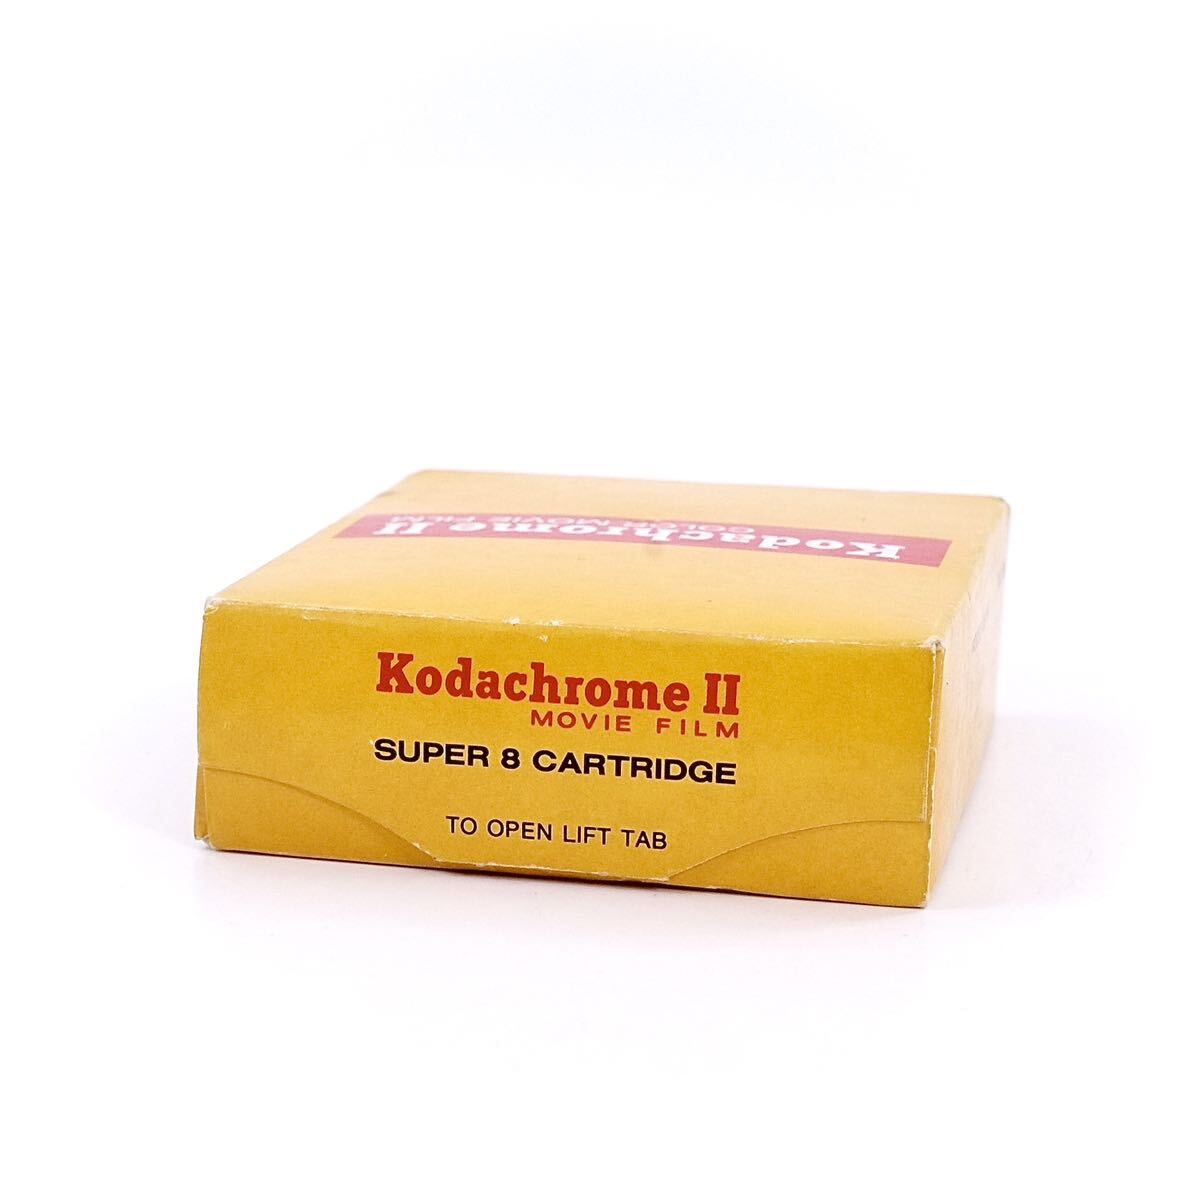 【未開封】Kodachrome Ⅱ コダクローム 15mm ムービーフィルム KA464 Super 8 CARTRIDGE_画像4